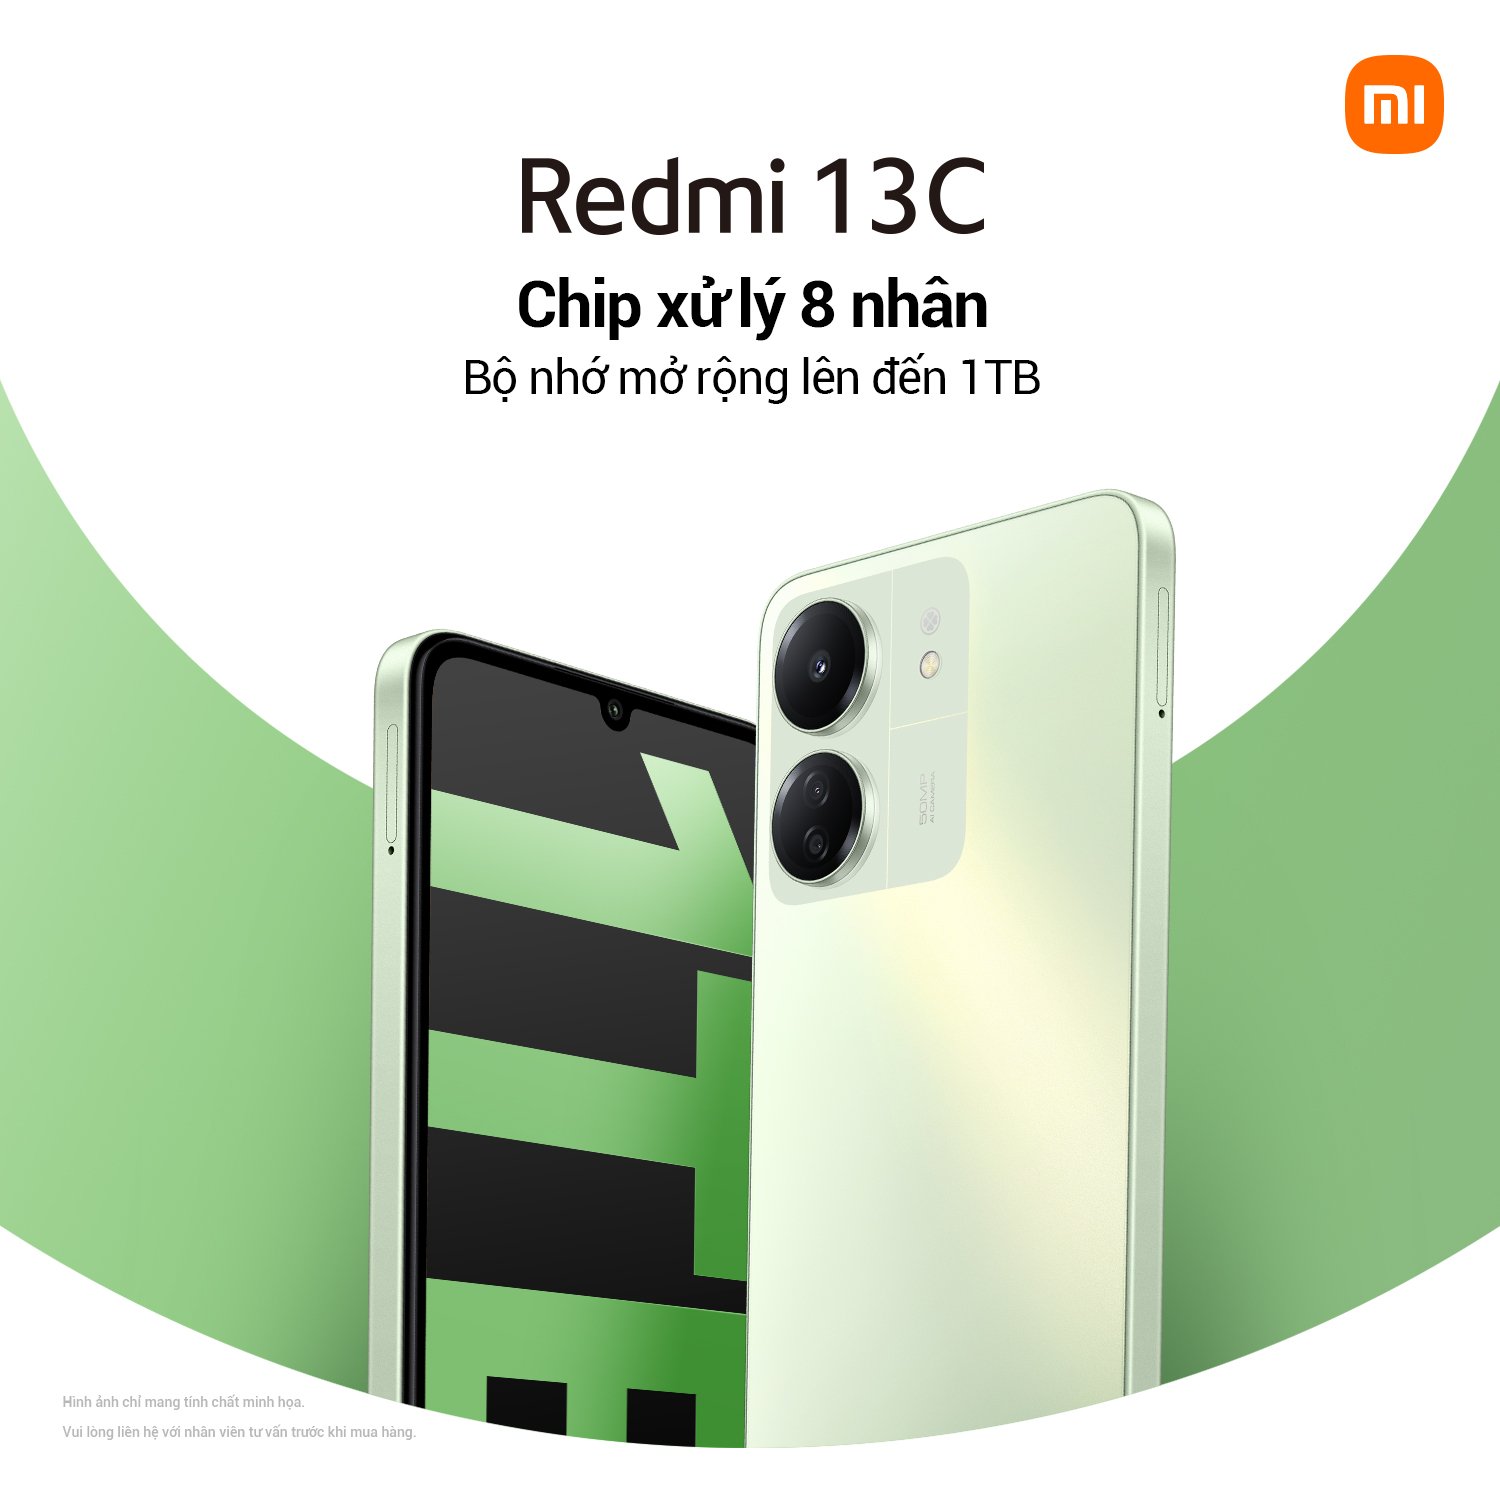 Chip xu ly Xiaomi ra mắt Redmi 13C: Màn hình cực lớn, bộ 3 camera 50MP, giá chỉ từ 3,09 triệu đồng